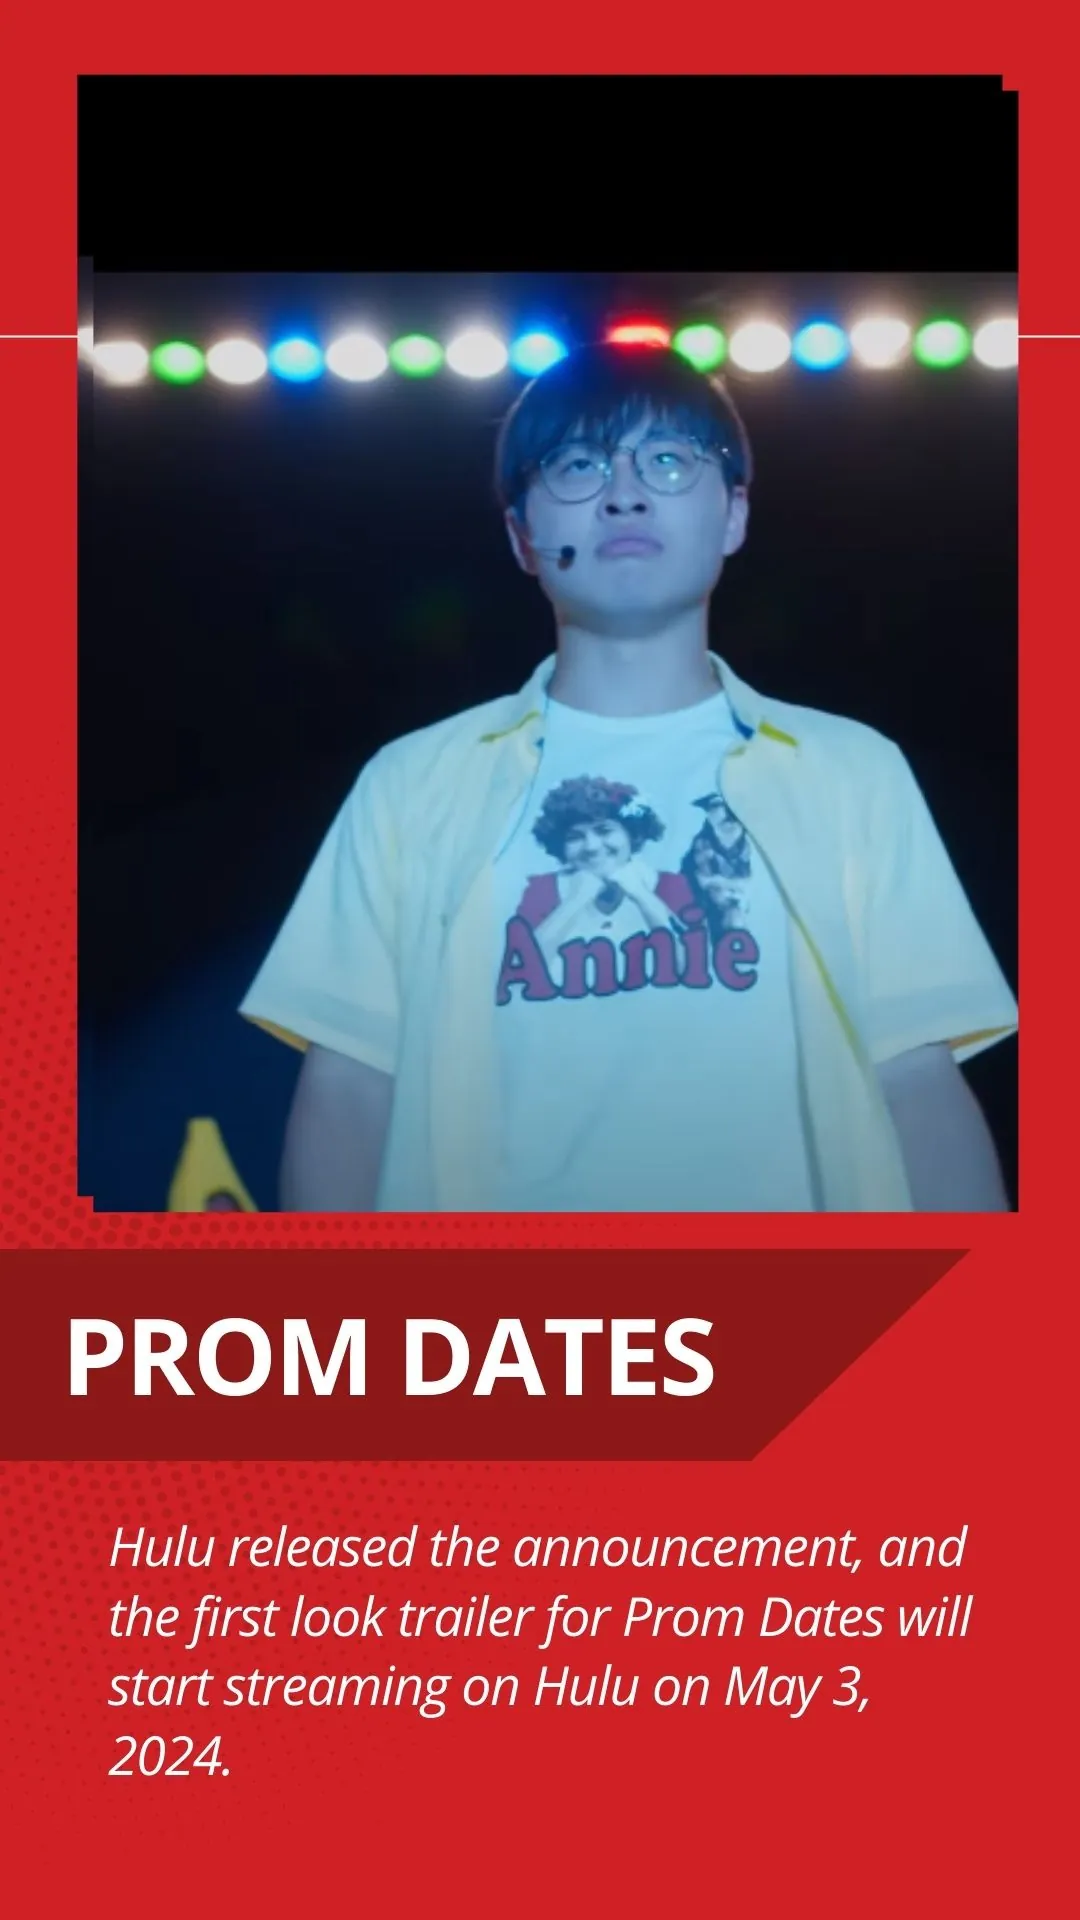 Prom Dates